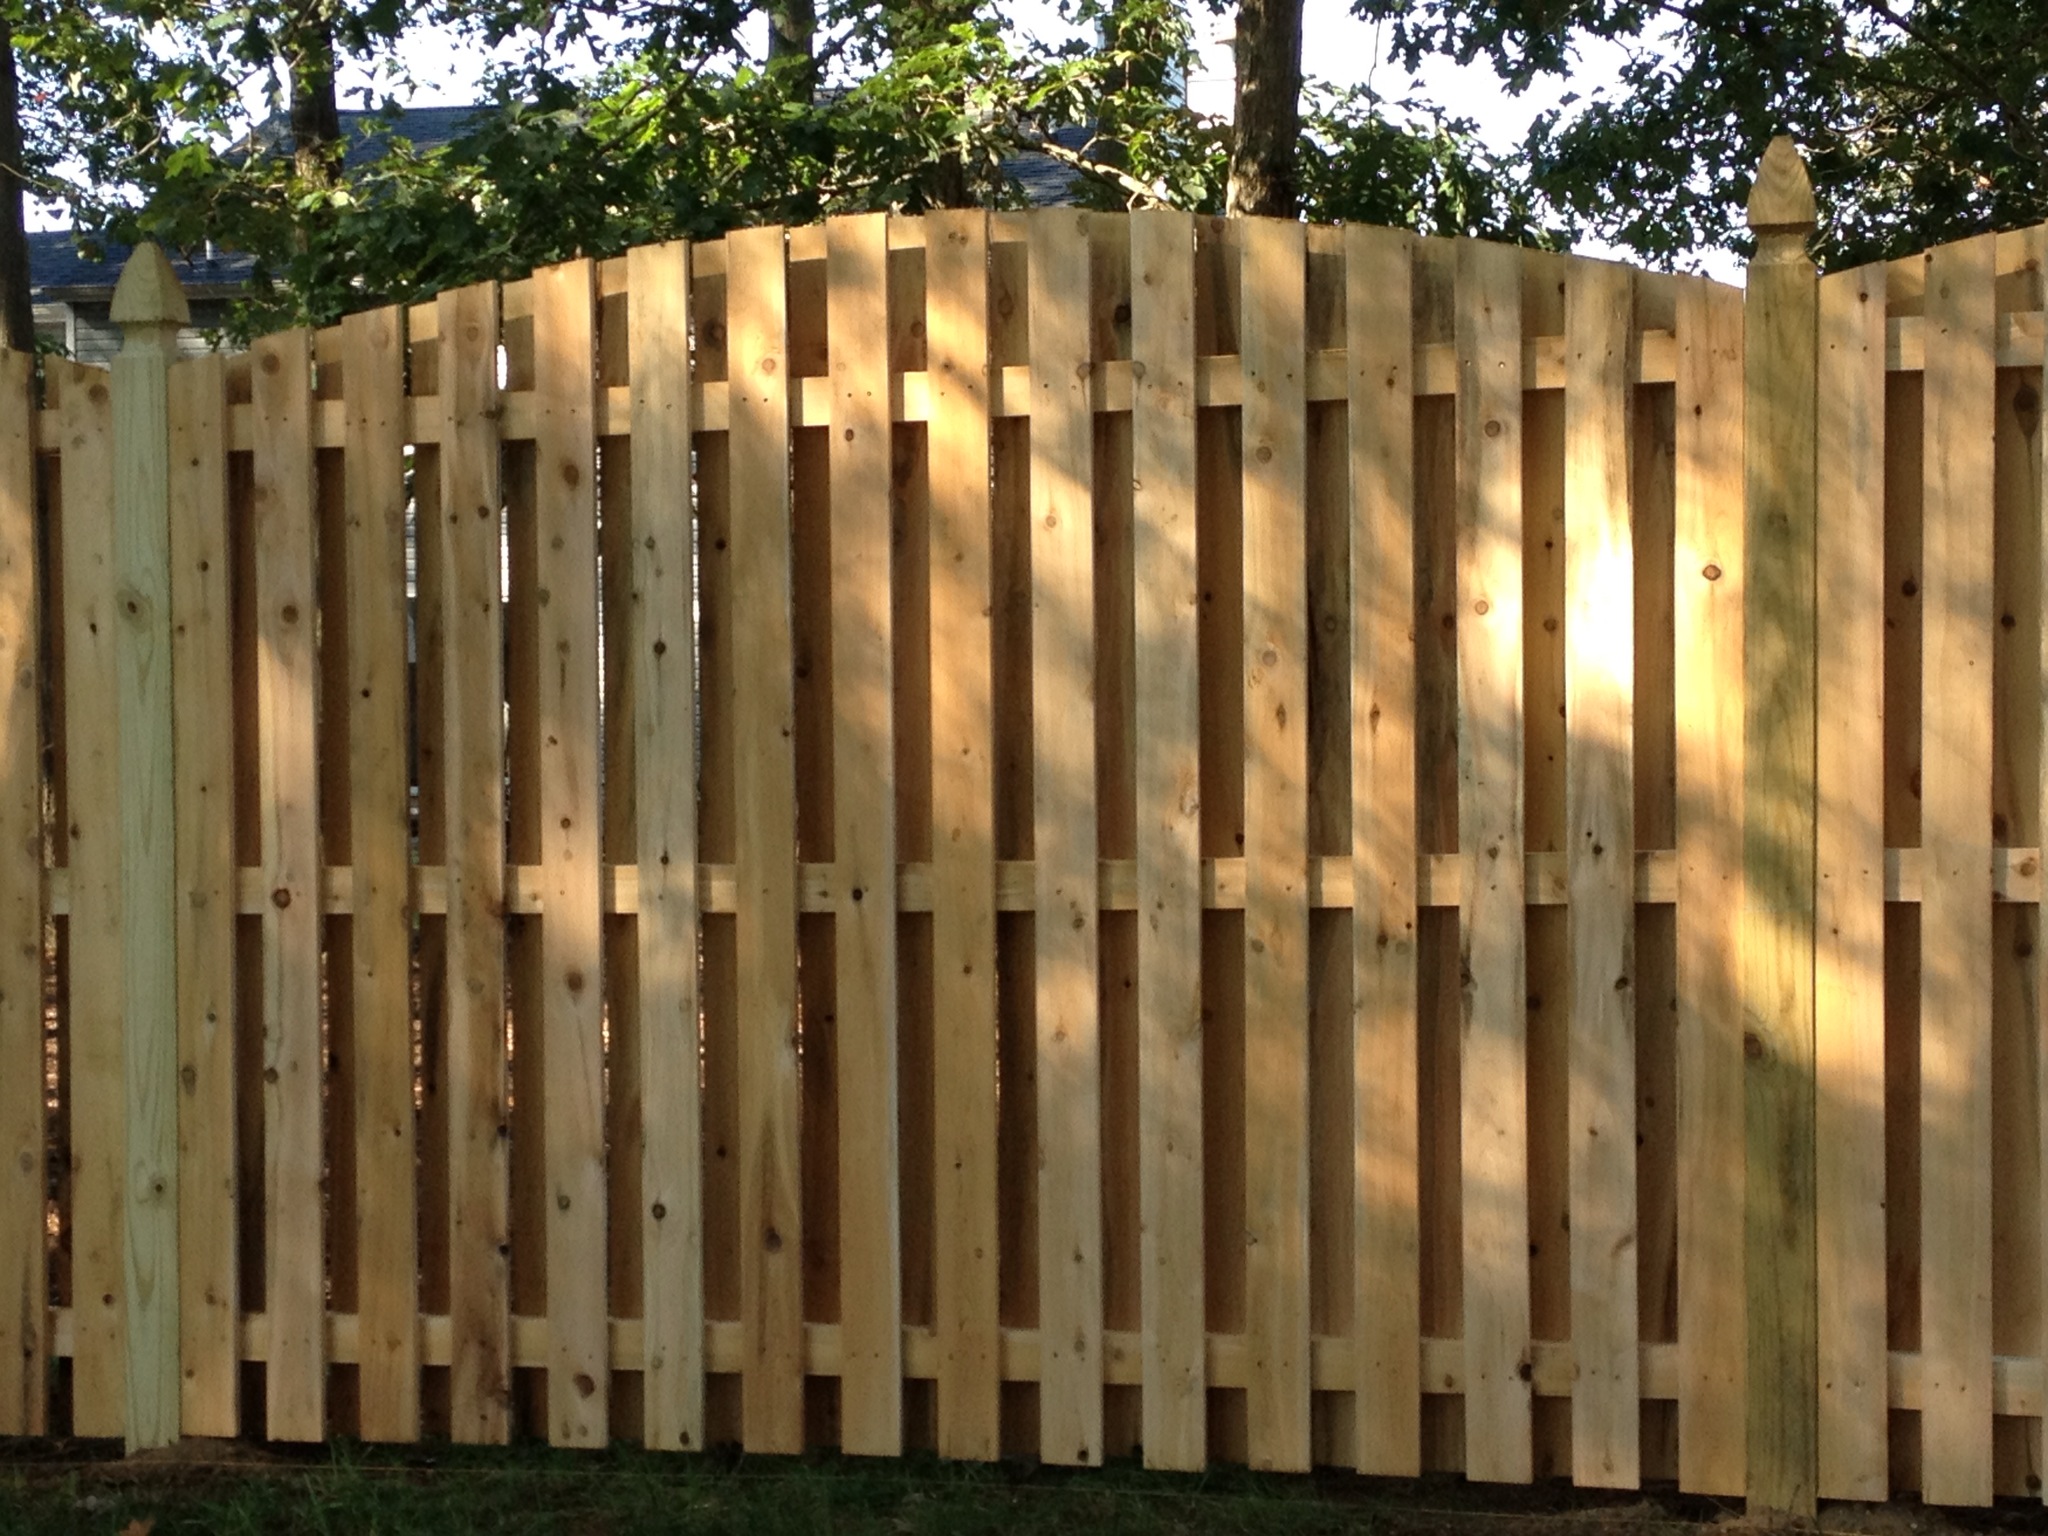 Wood Fence 1